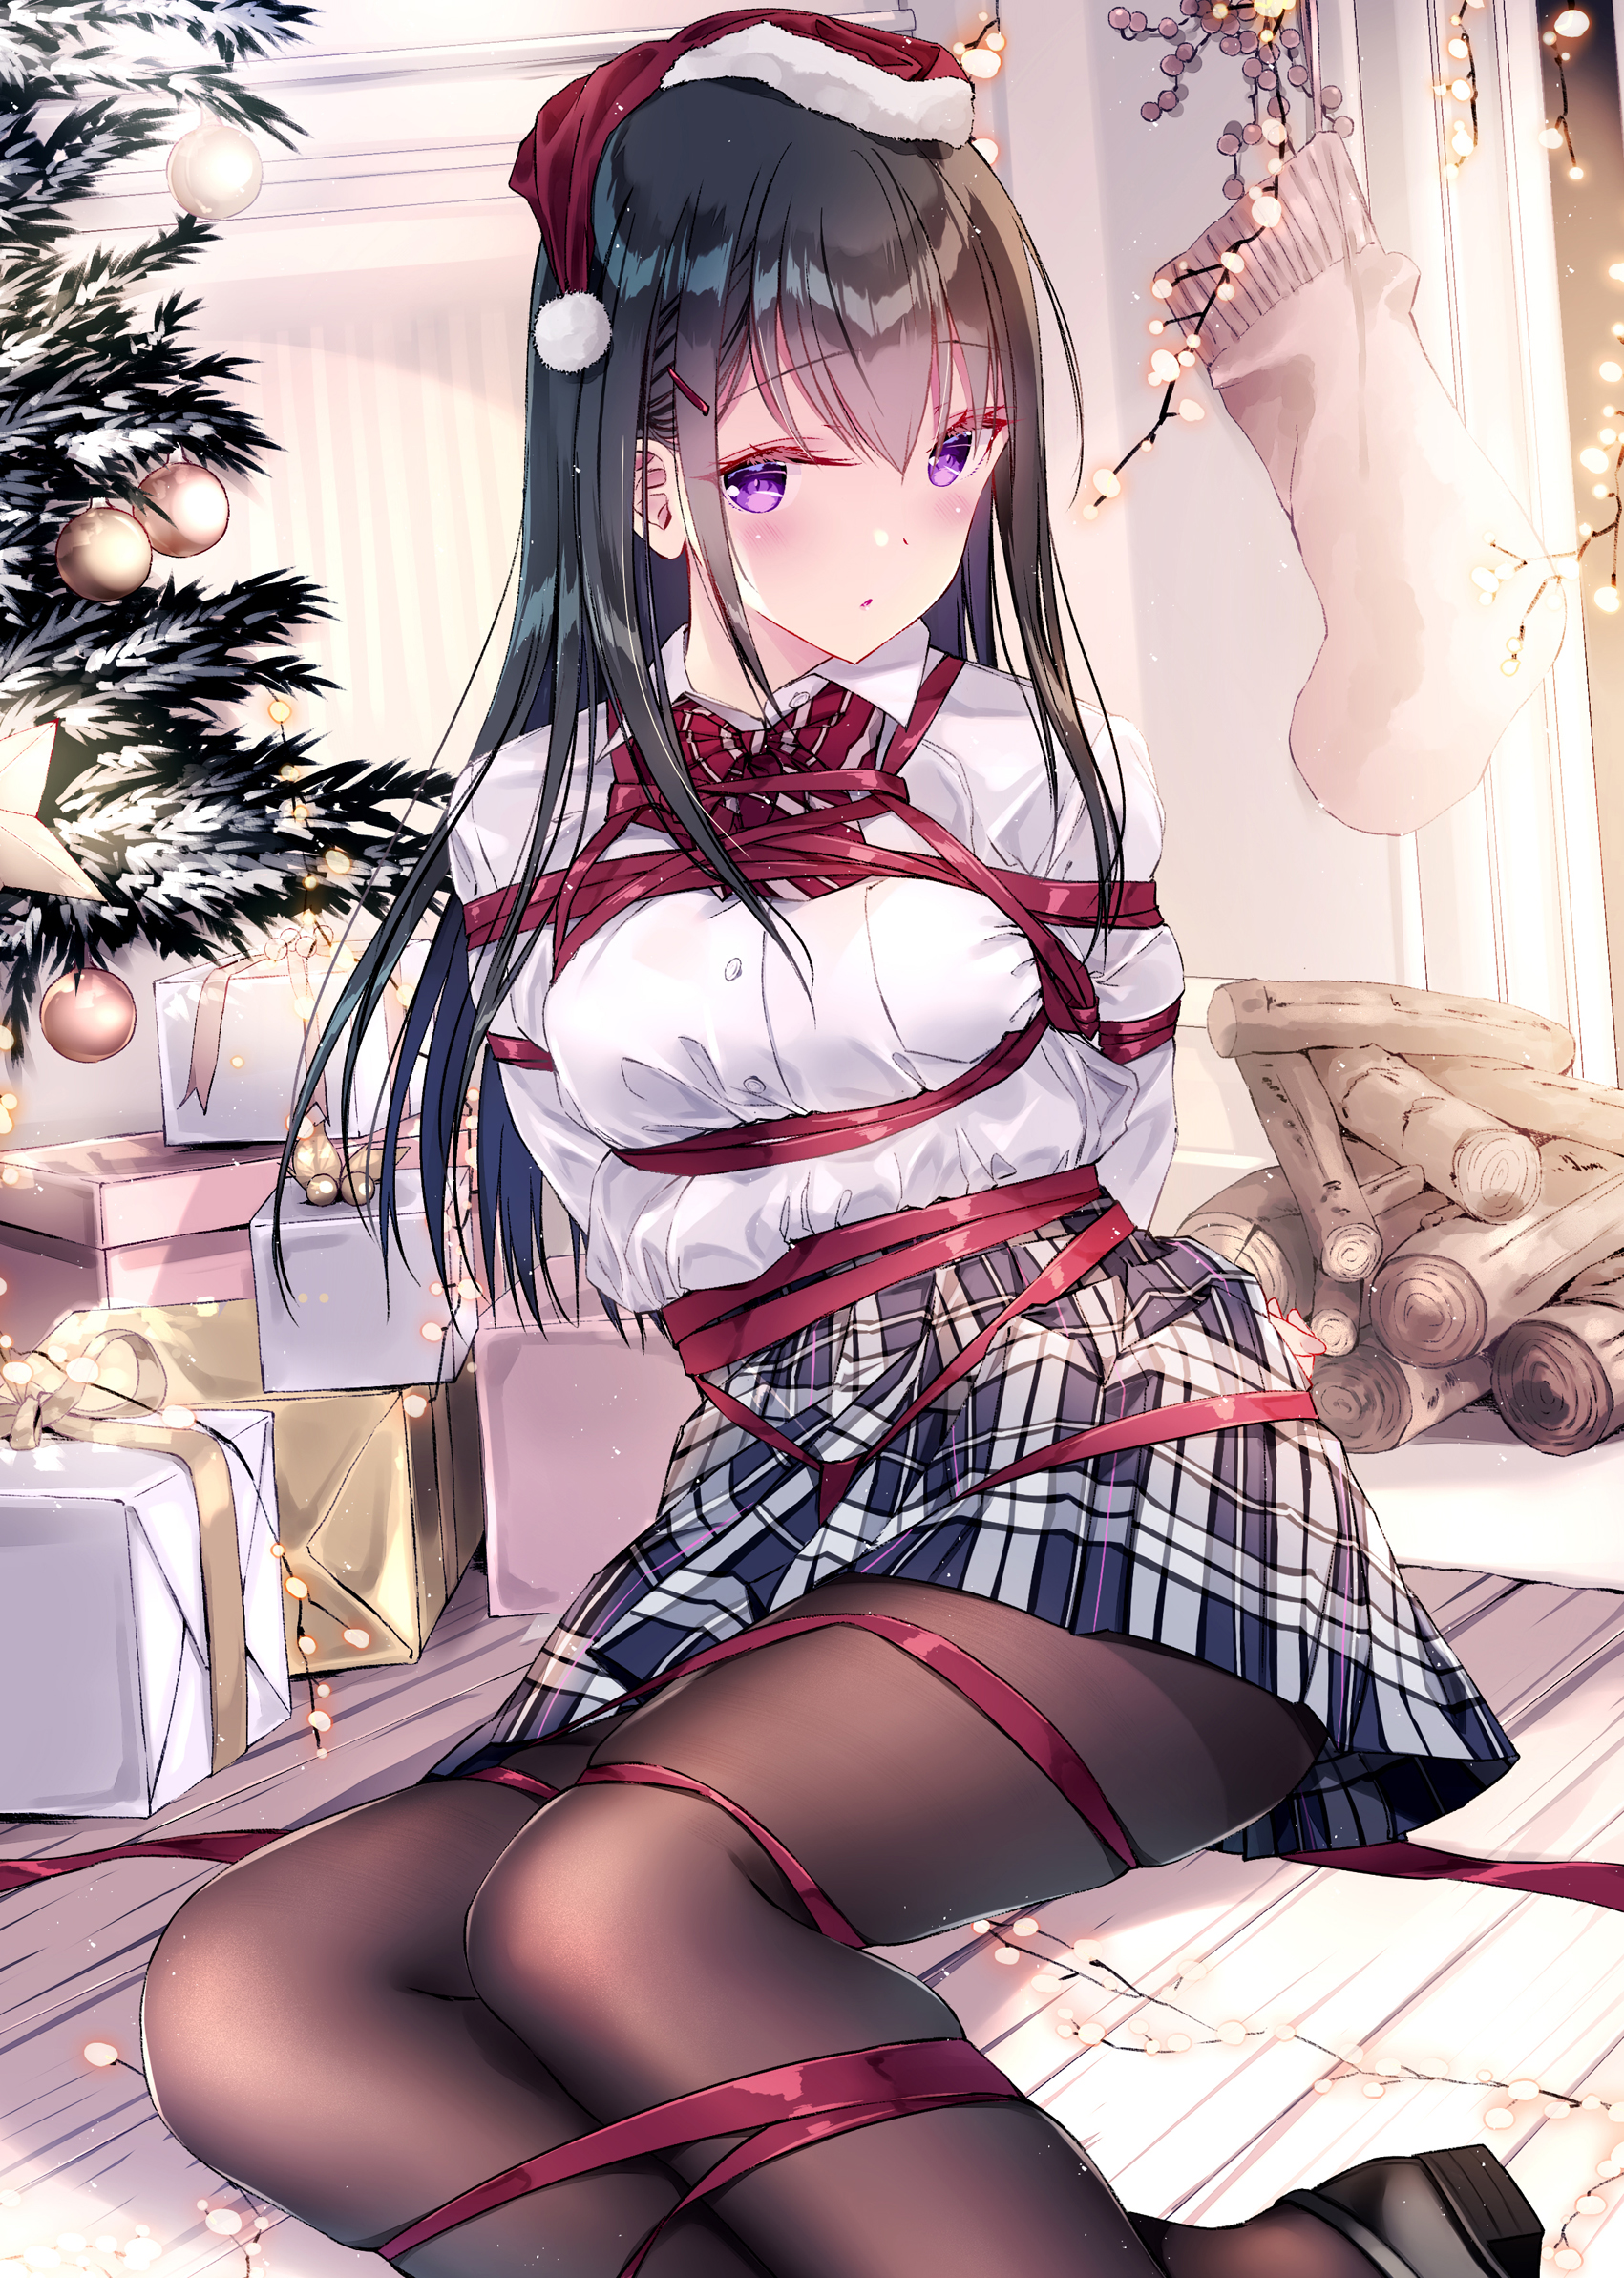 Anime 1701x2386 anime anime girls portrait display ribbon Christmas tree Christmas presents Christmas pantyhose BDSM shibari